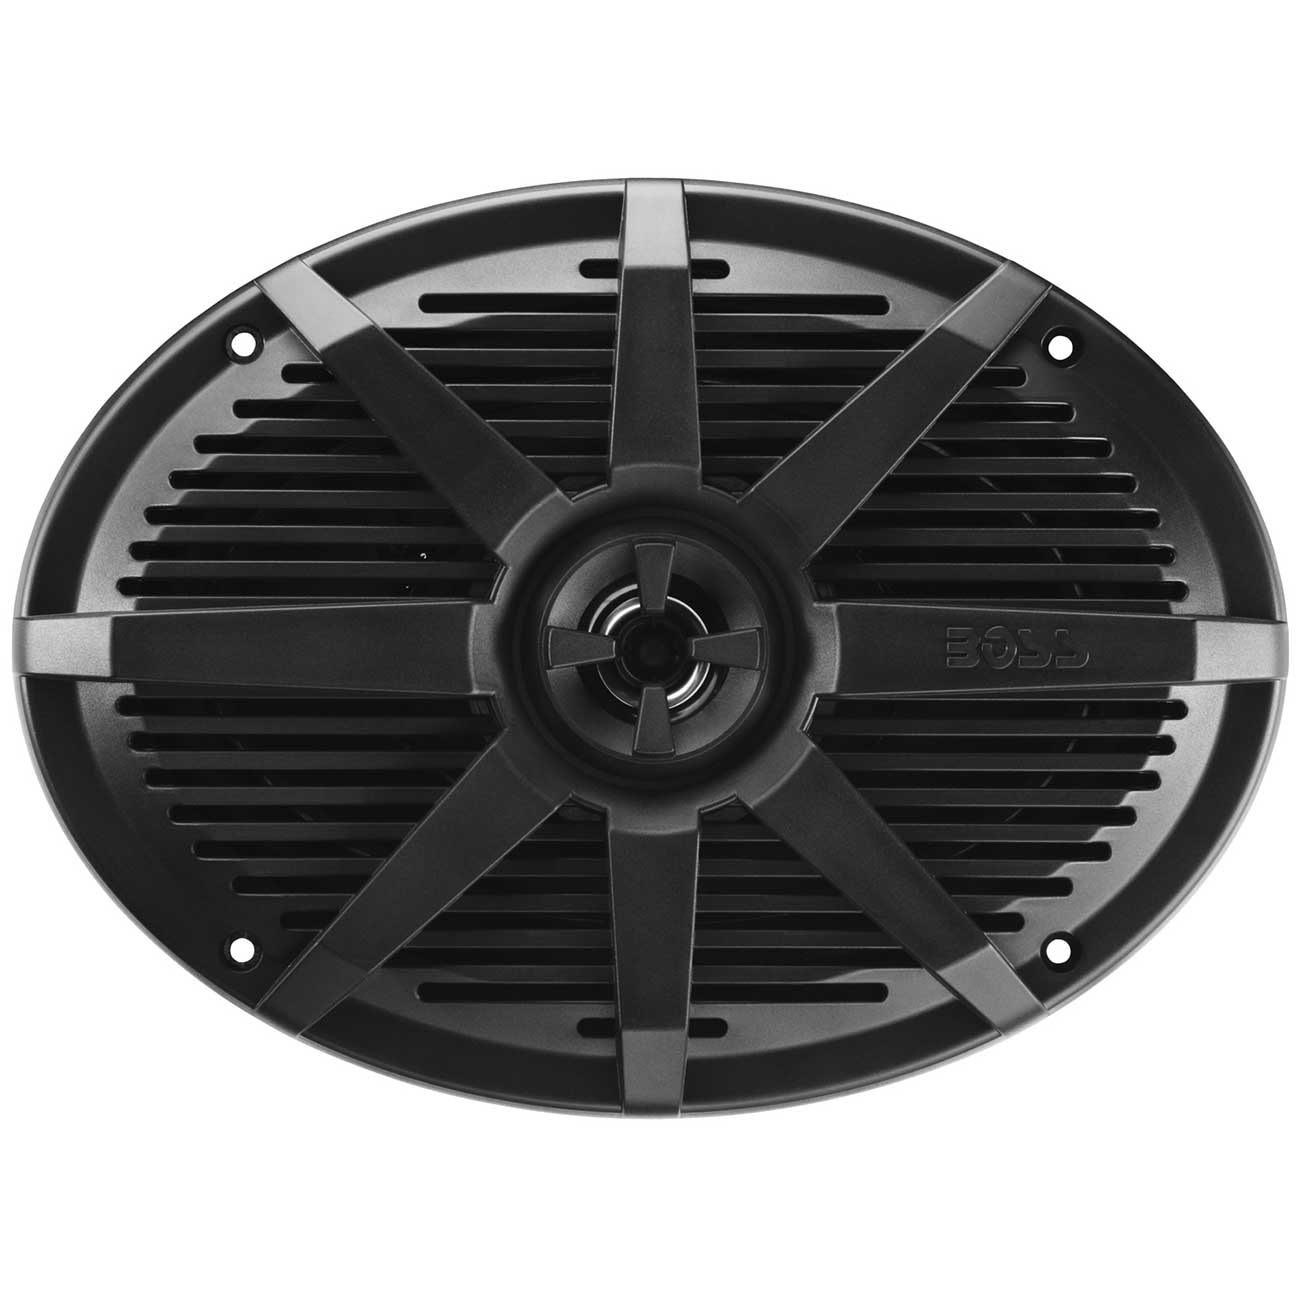 Boss 6x9" 2-way Coaxial Marine Speaker 350w (black)